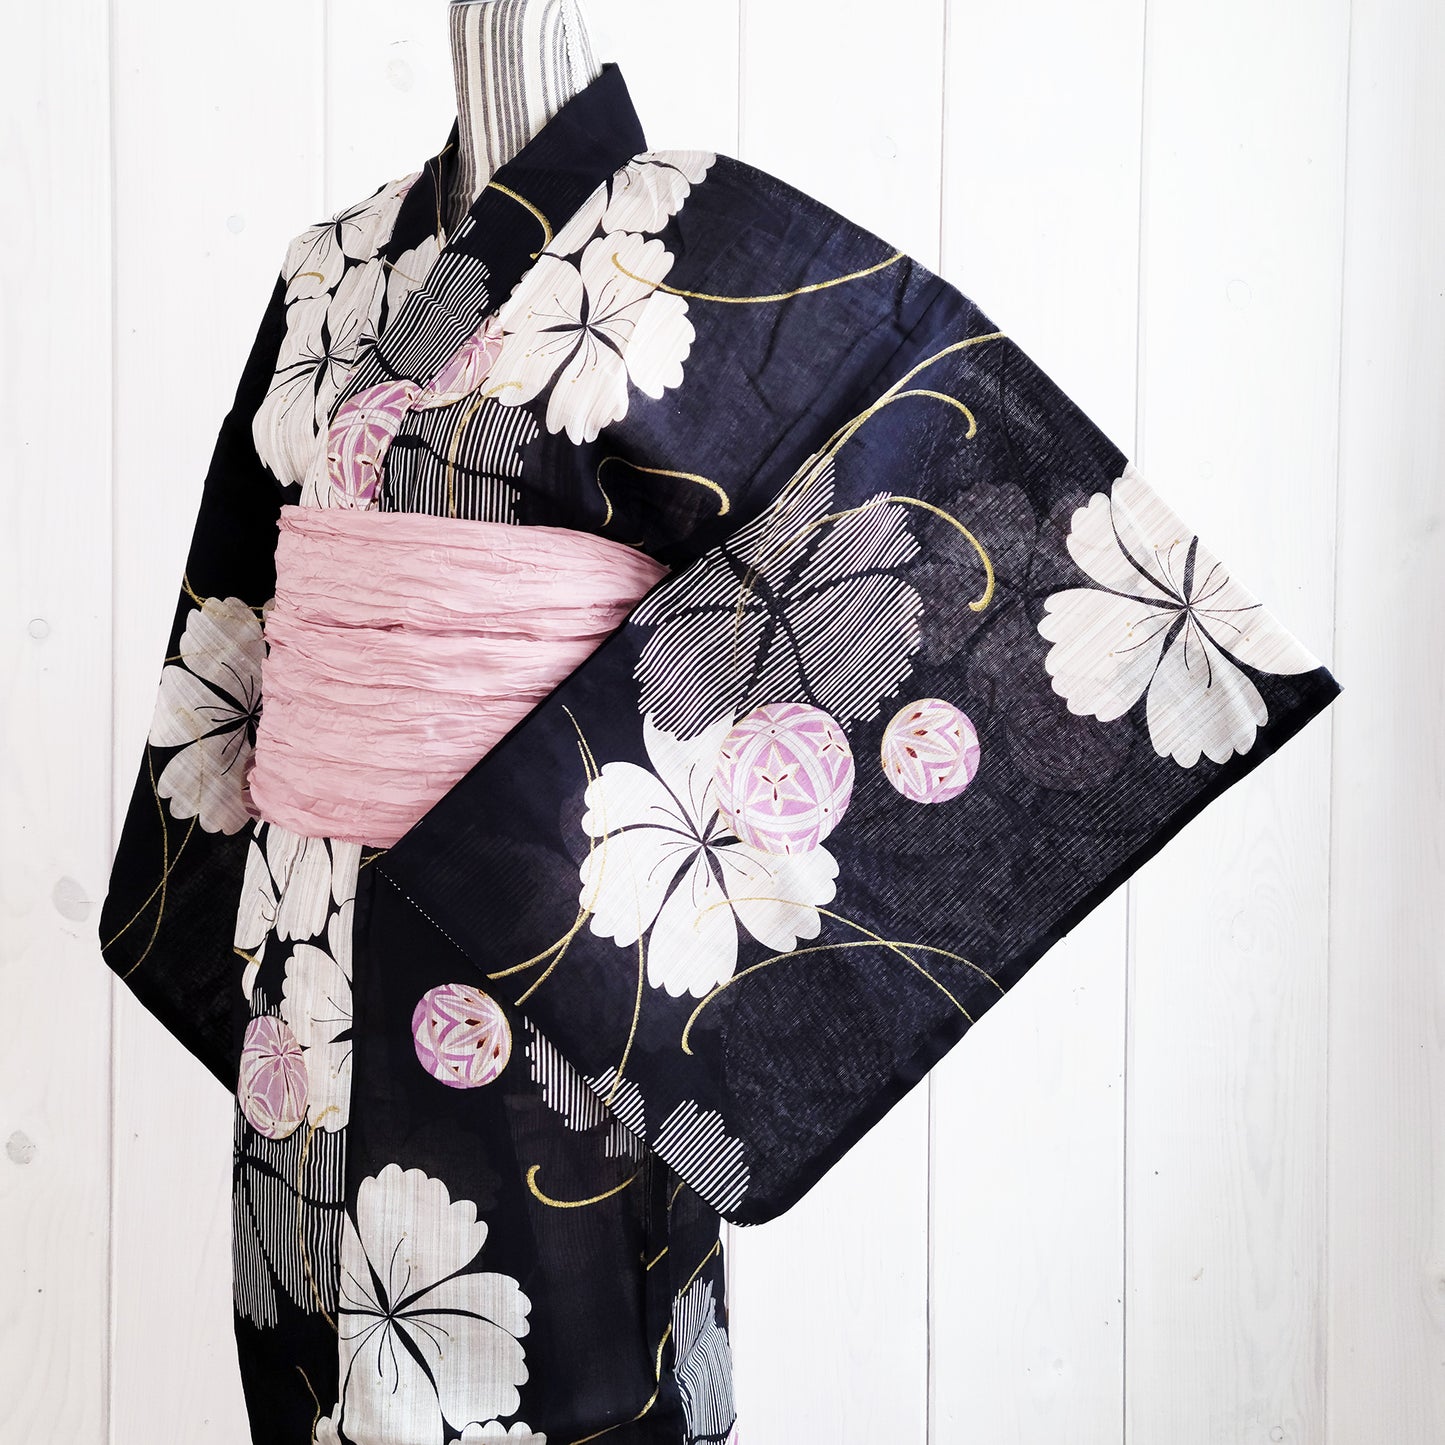 Women's Japanese Traditional Yukata Kimono - Temari Ball and Flowers in Black